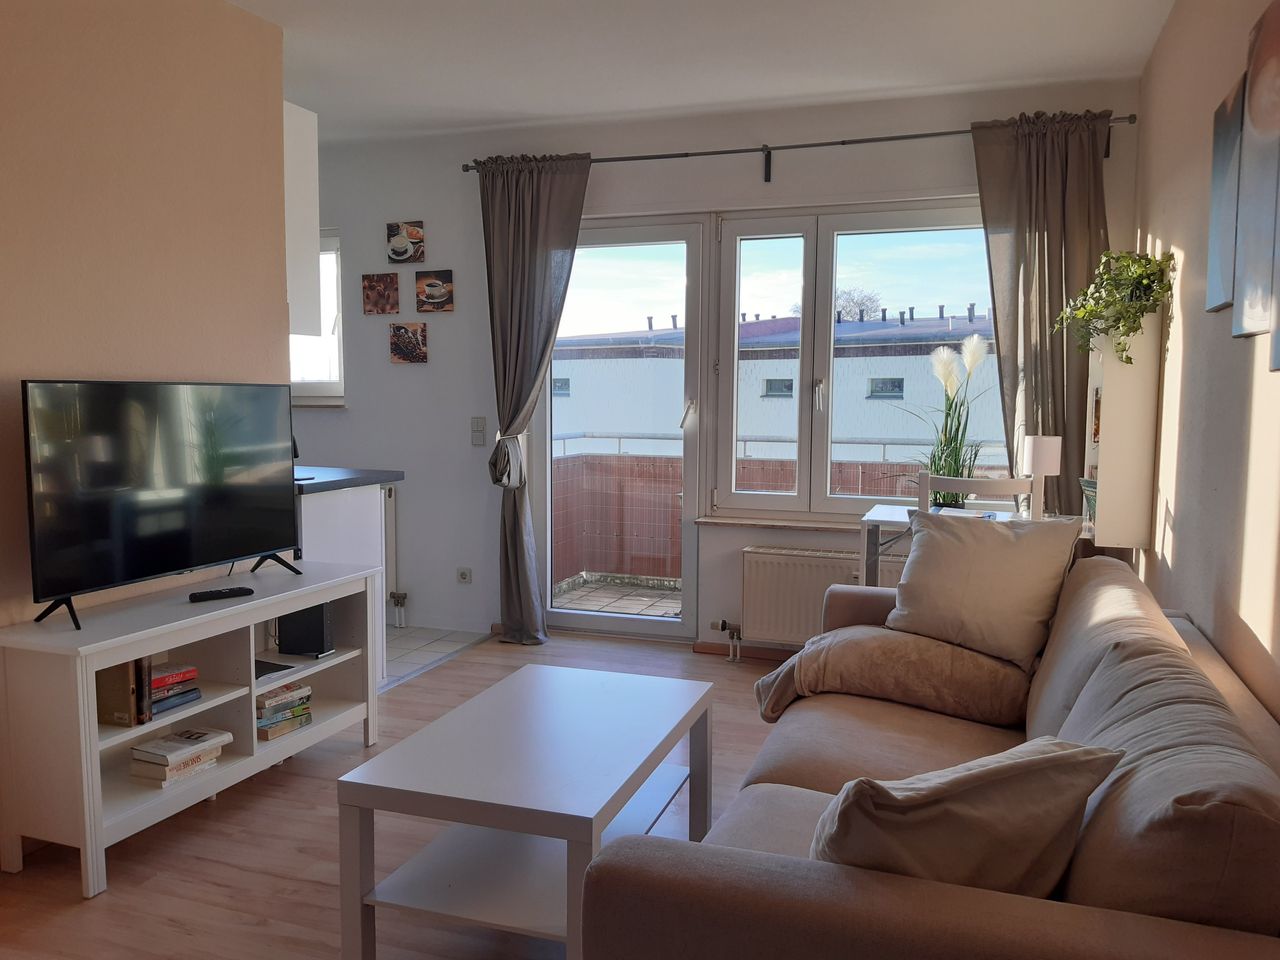 Modern, cute suite located in Leipzig